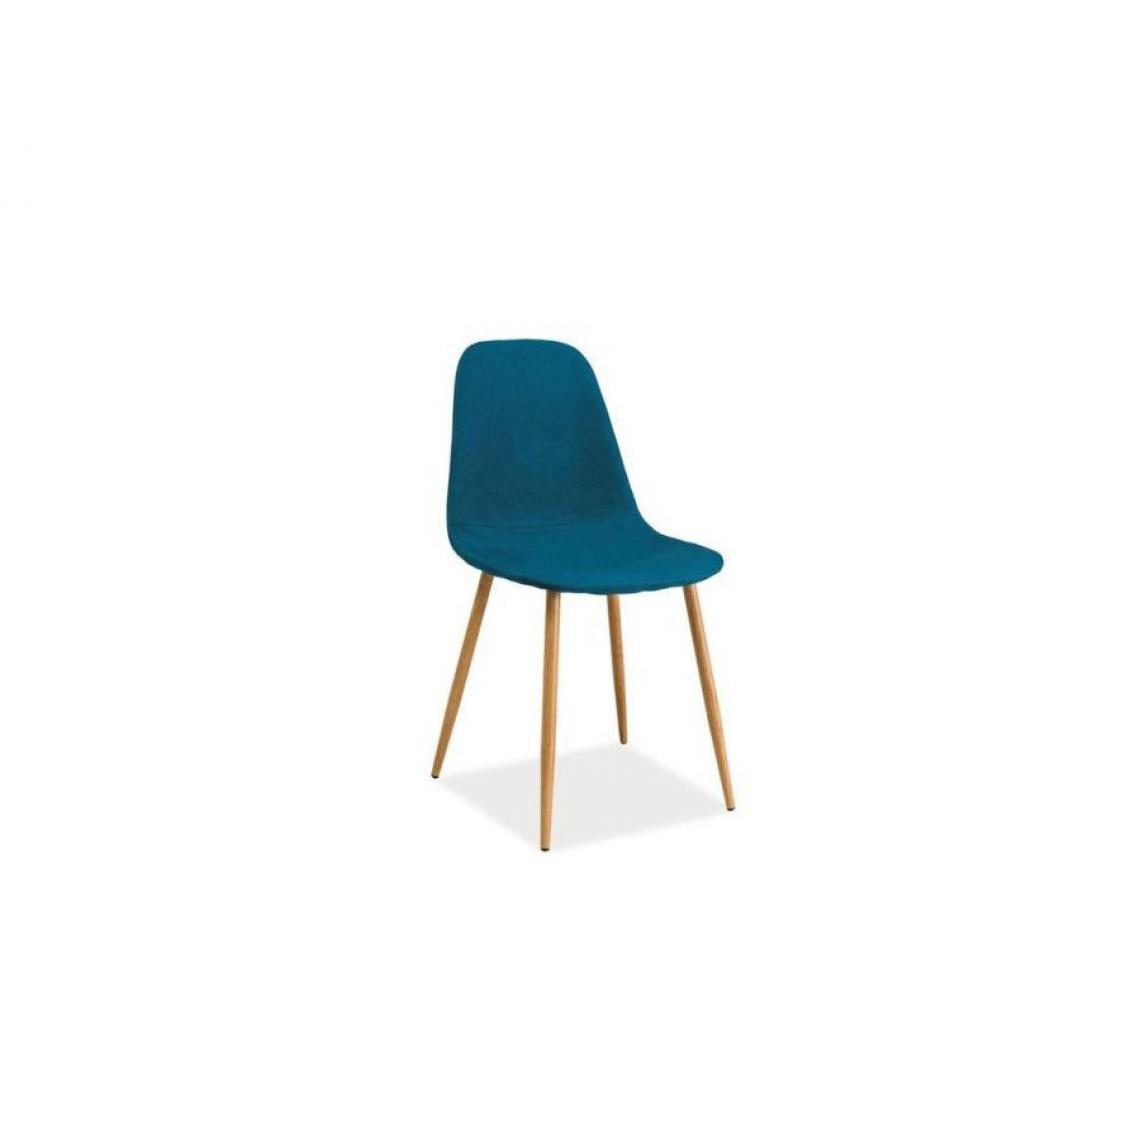 Hucoco - FRANZI | Chaise tissu style scandinave avec base en métal | Salle à mager Salon Bureau | 86x44x39 cm | Tissu haute qualité - Bleu - Chaises